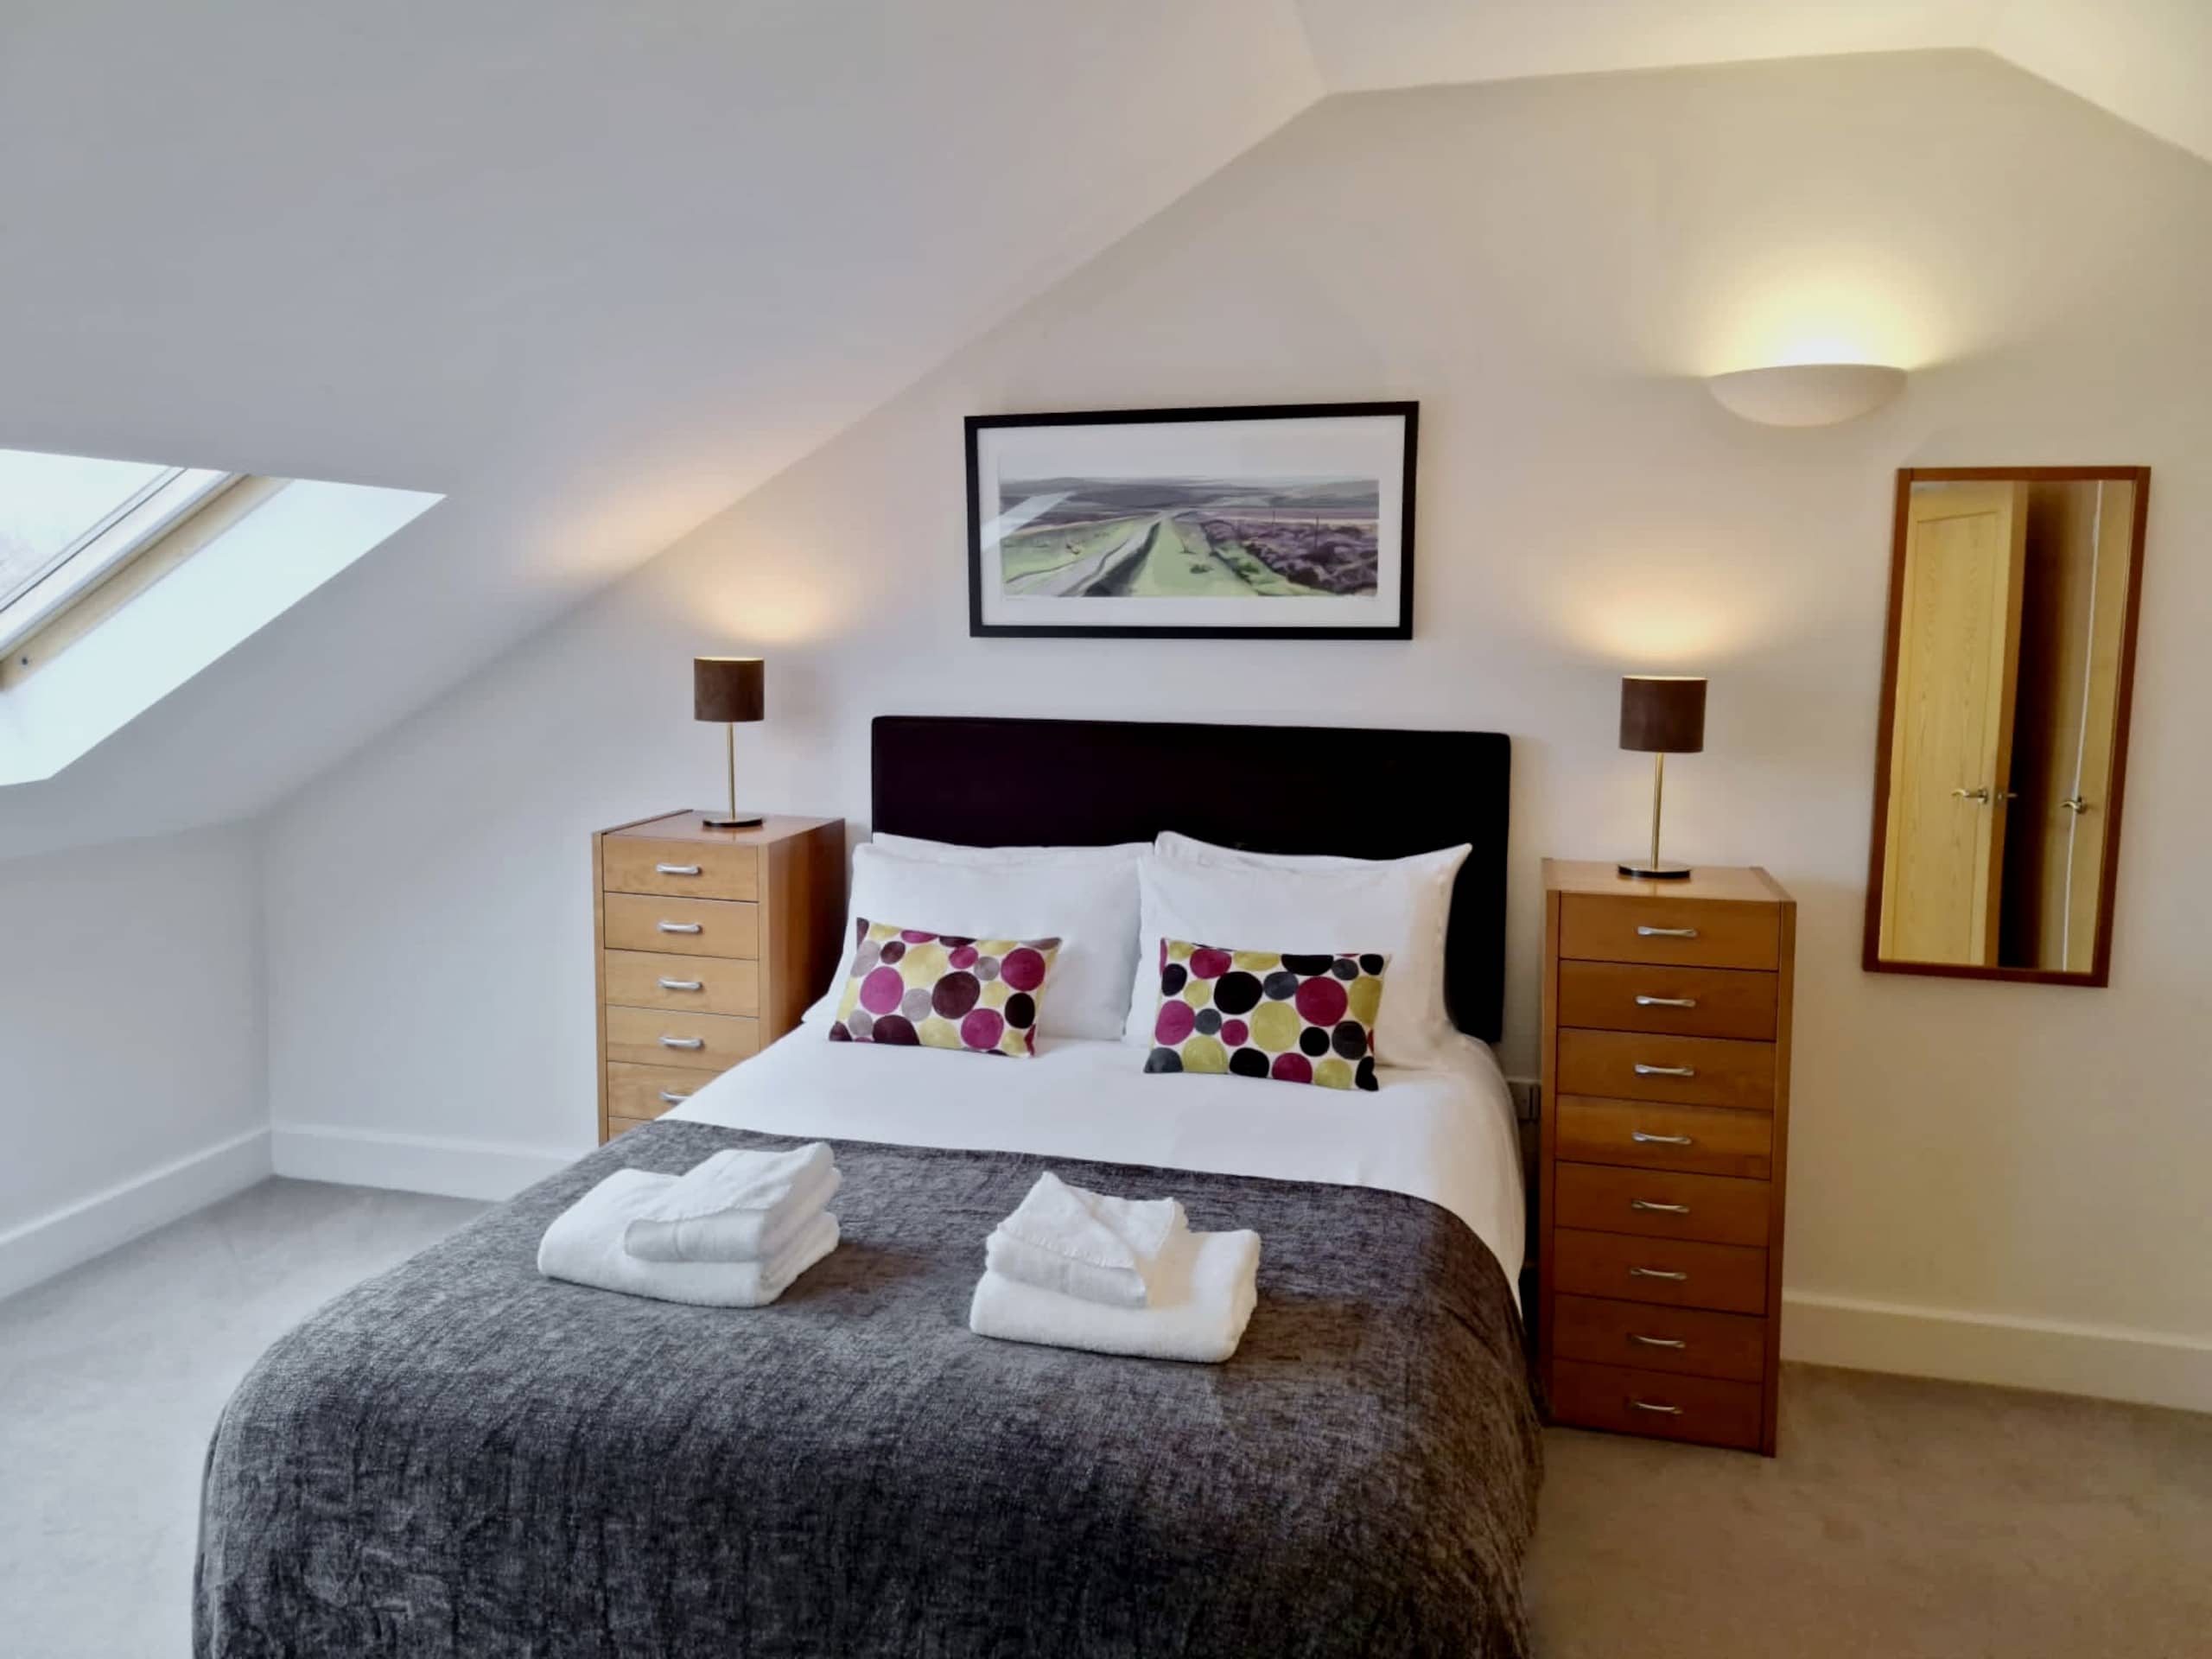 Manor House - Duplex - Bedroom